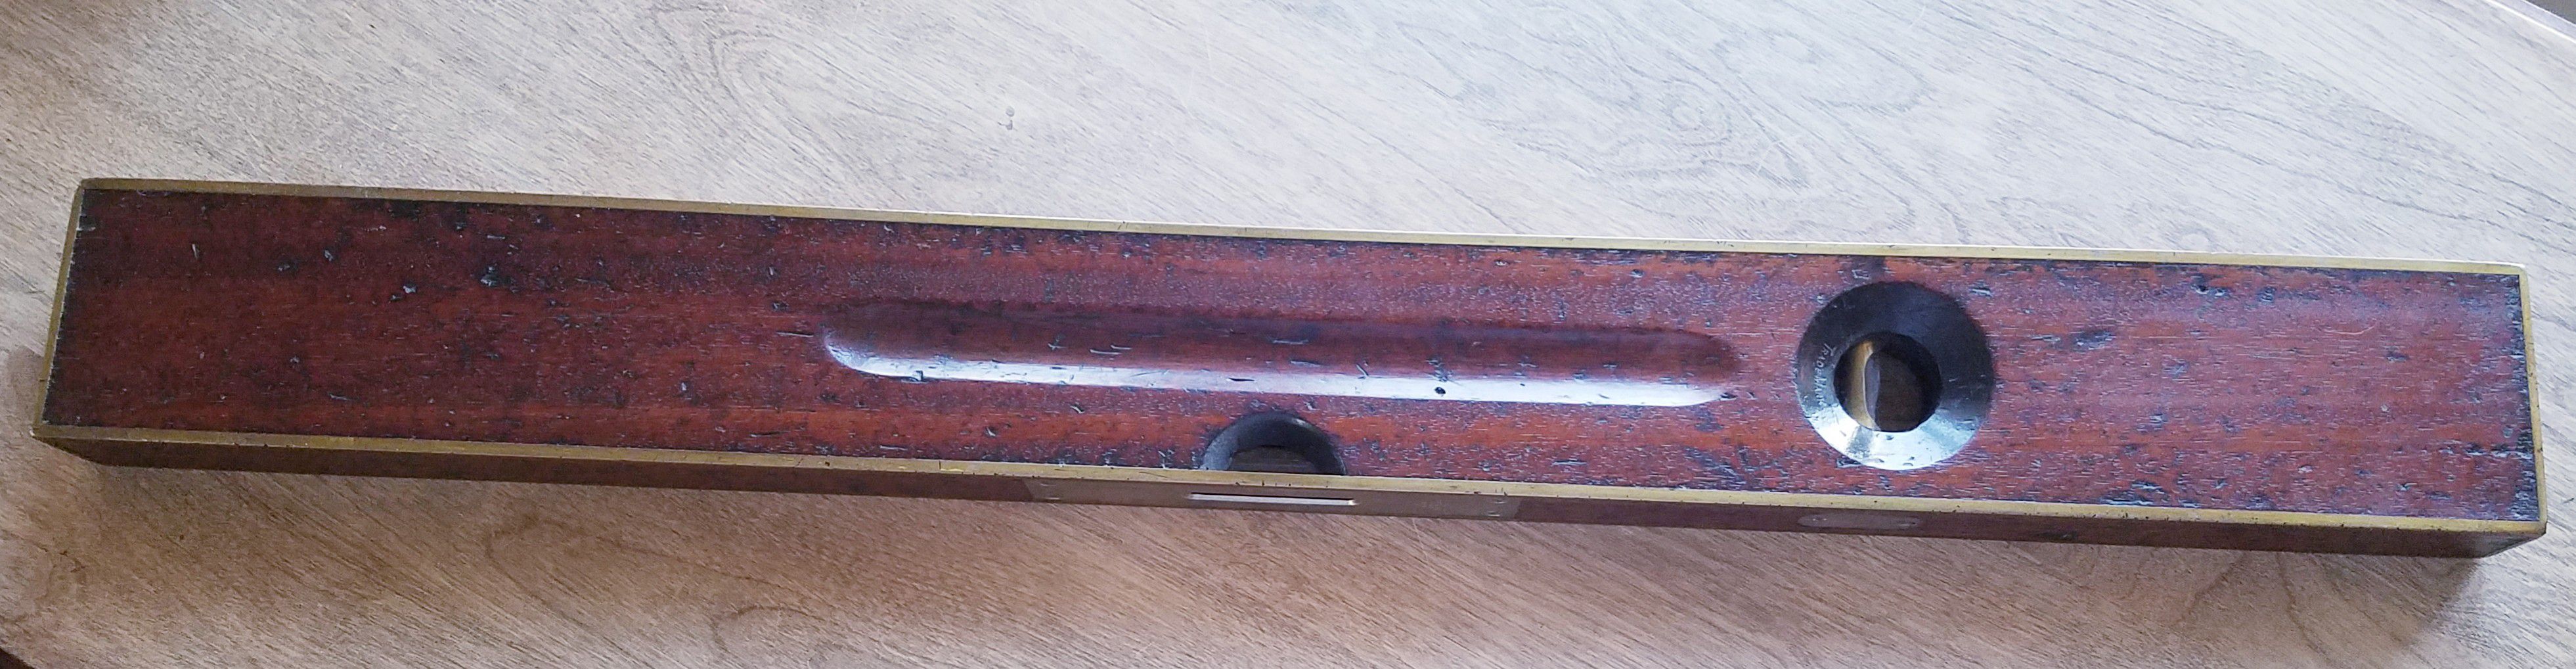 Antique Stanley 28" x 4" Brass & Wood Level - 1906